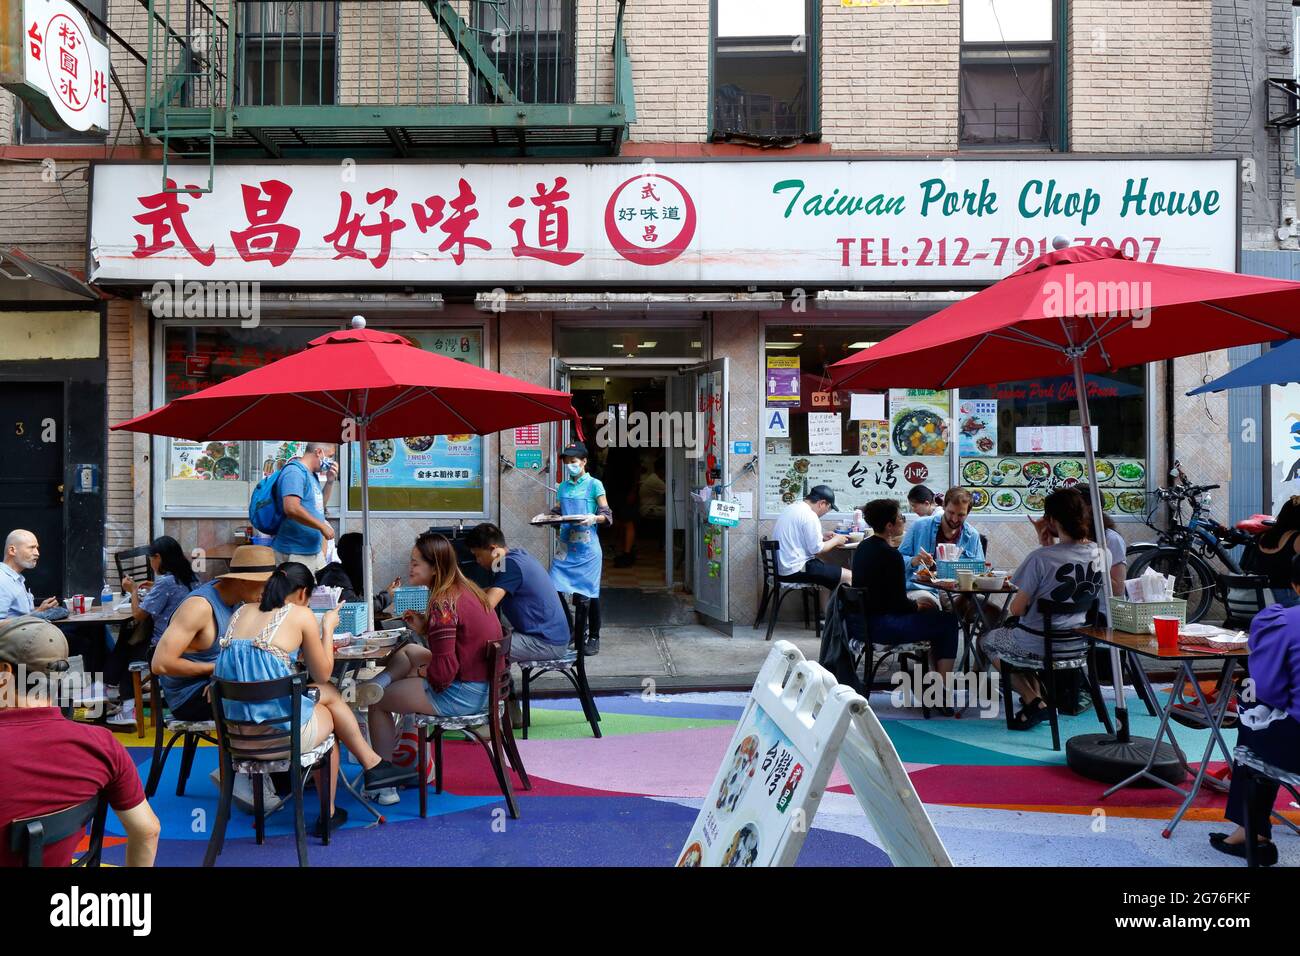 Taiwan Pork Chop House, 3 Doyers St, New York, NYC Schaufenster Foto eines chinesischen Restaurants in Manhattan Chinatown. Stockfoto